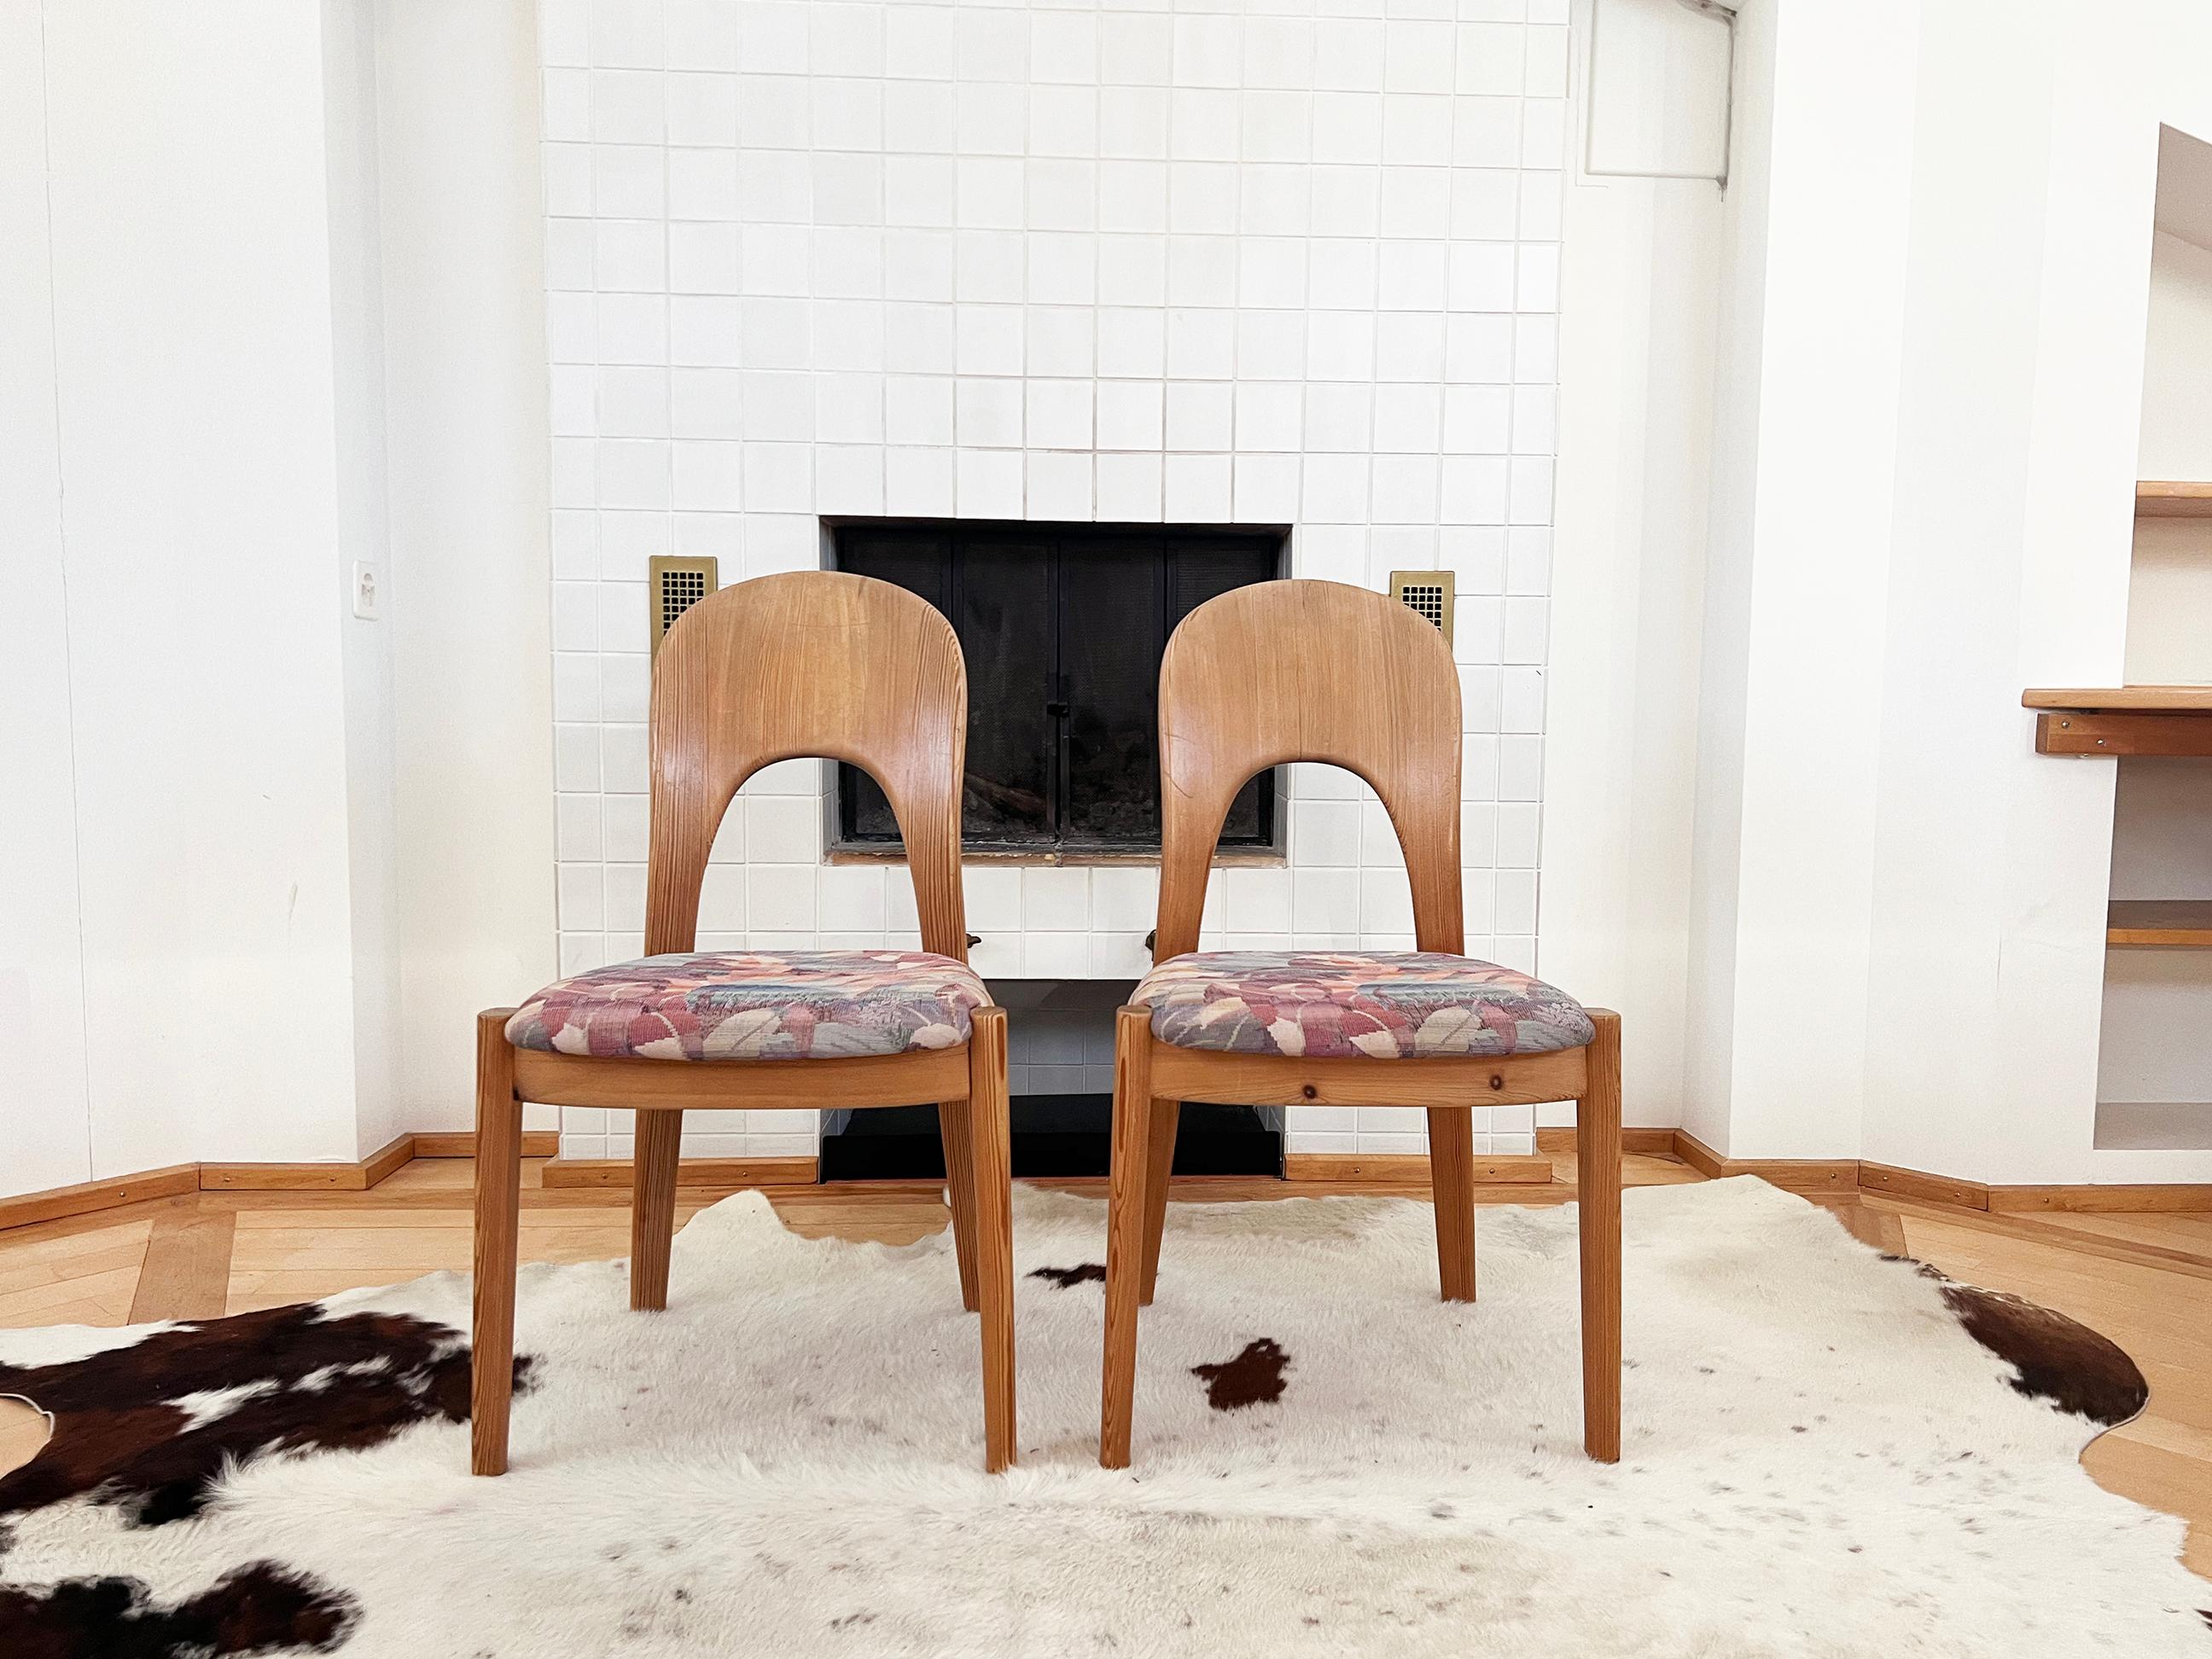 Fantastique ensemble de 6 chaises en pin massif de très haute qualité du designer danois Niels Koefoed Hornslet.  Très rare à trouver en pin. Excellente qualité de fabrication.  Très tendance en pin !

Le cachet d'origine est présent sous toutes les